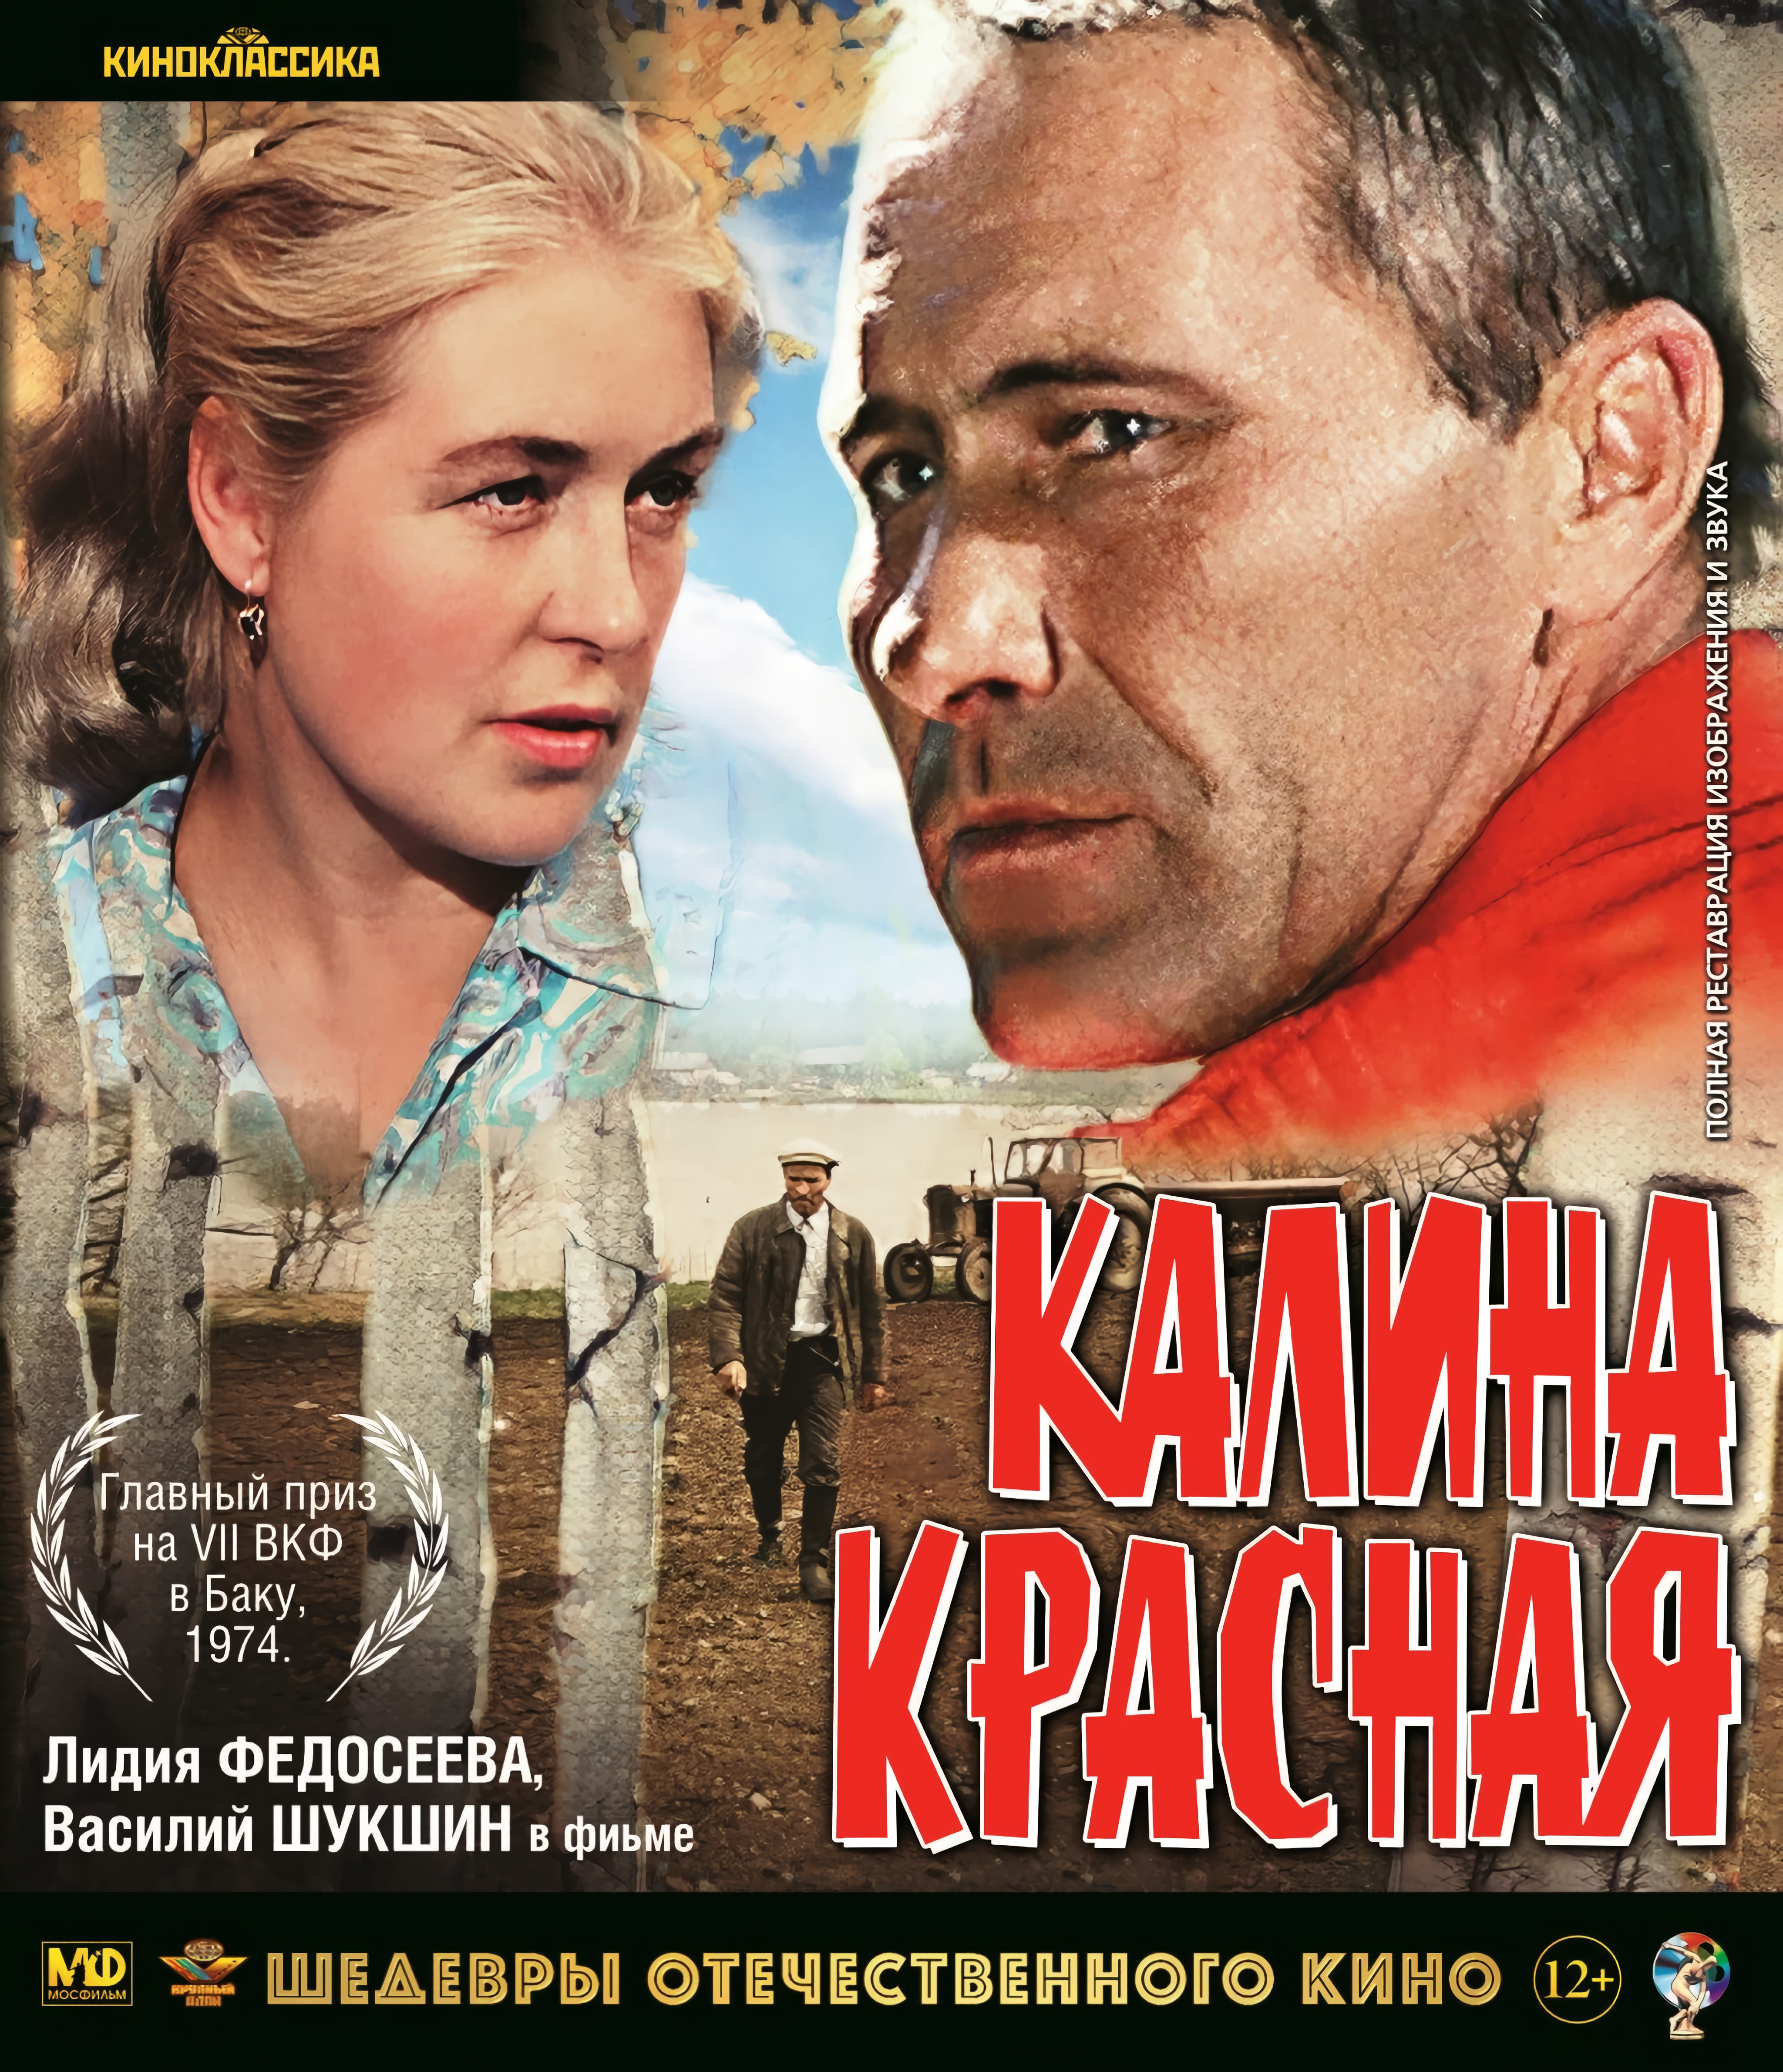 Шедевры отечественного кино: Калина красная (Blu-ray)